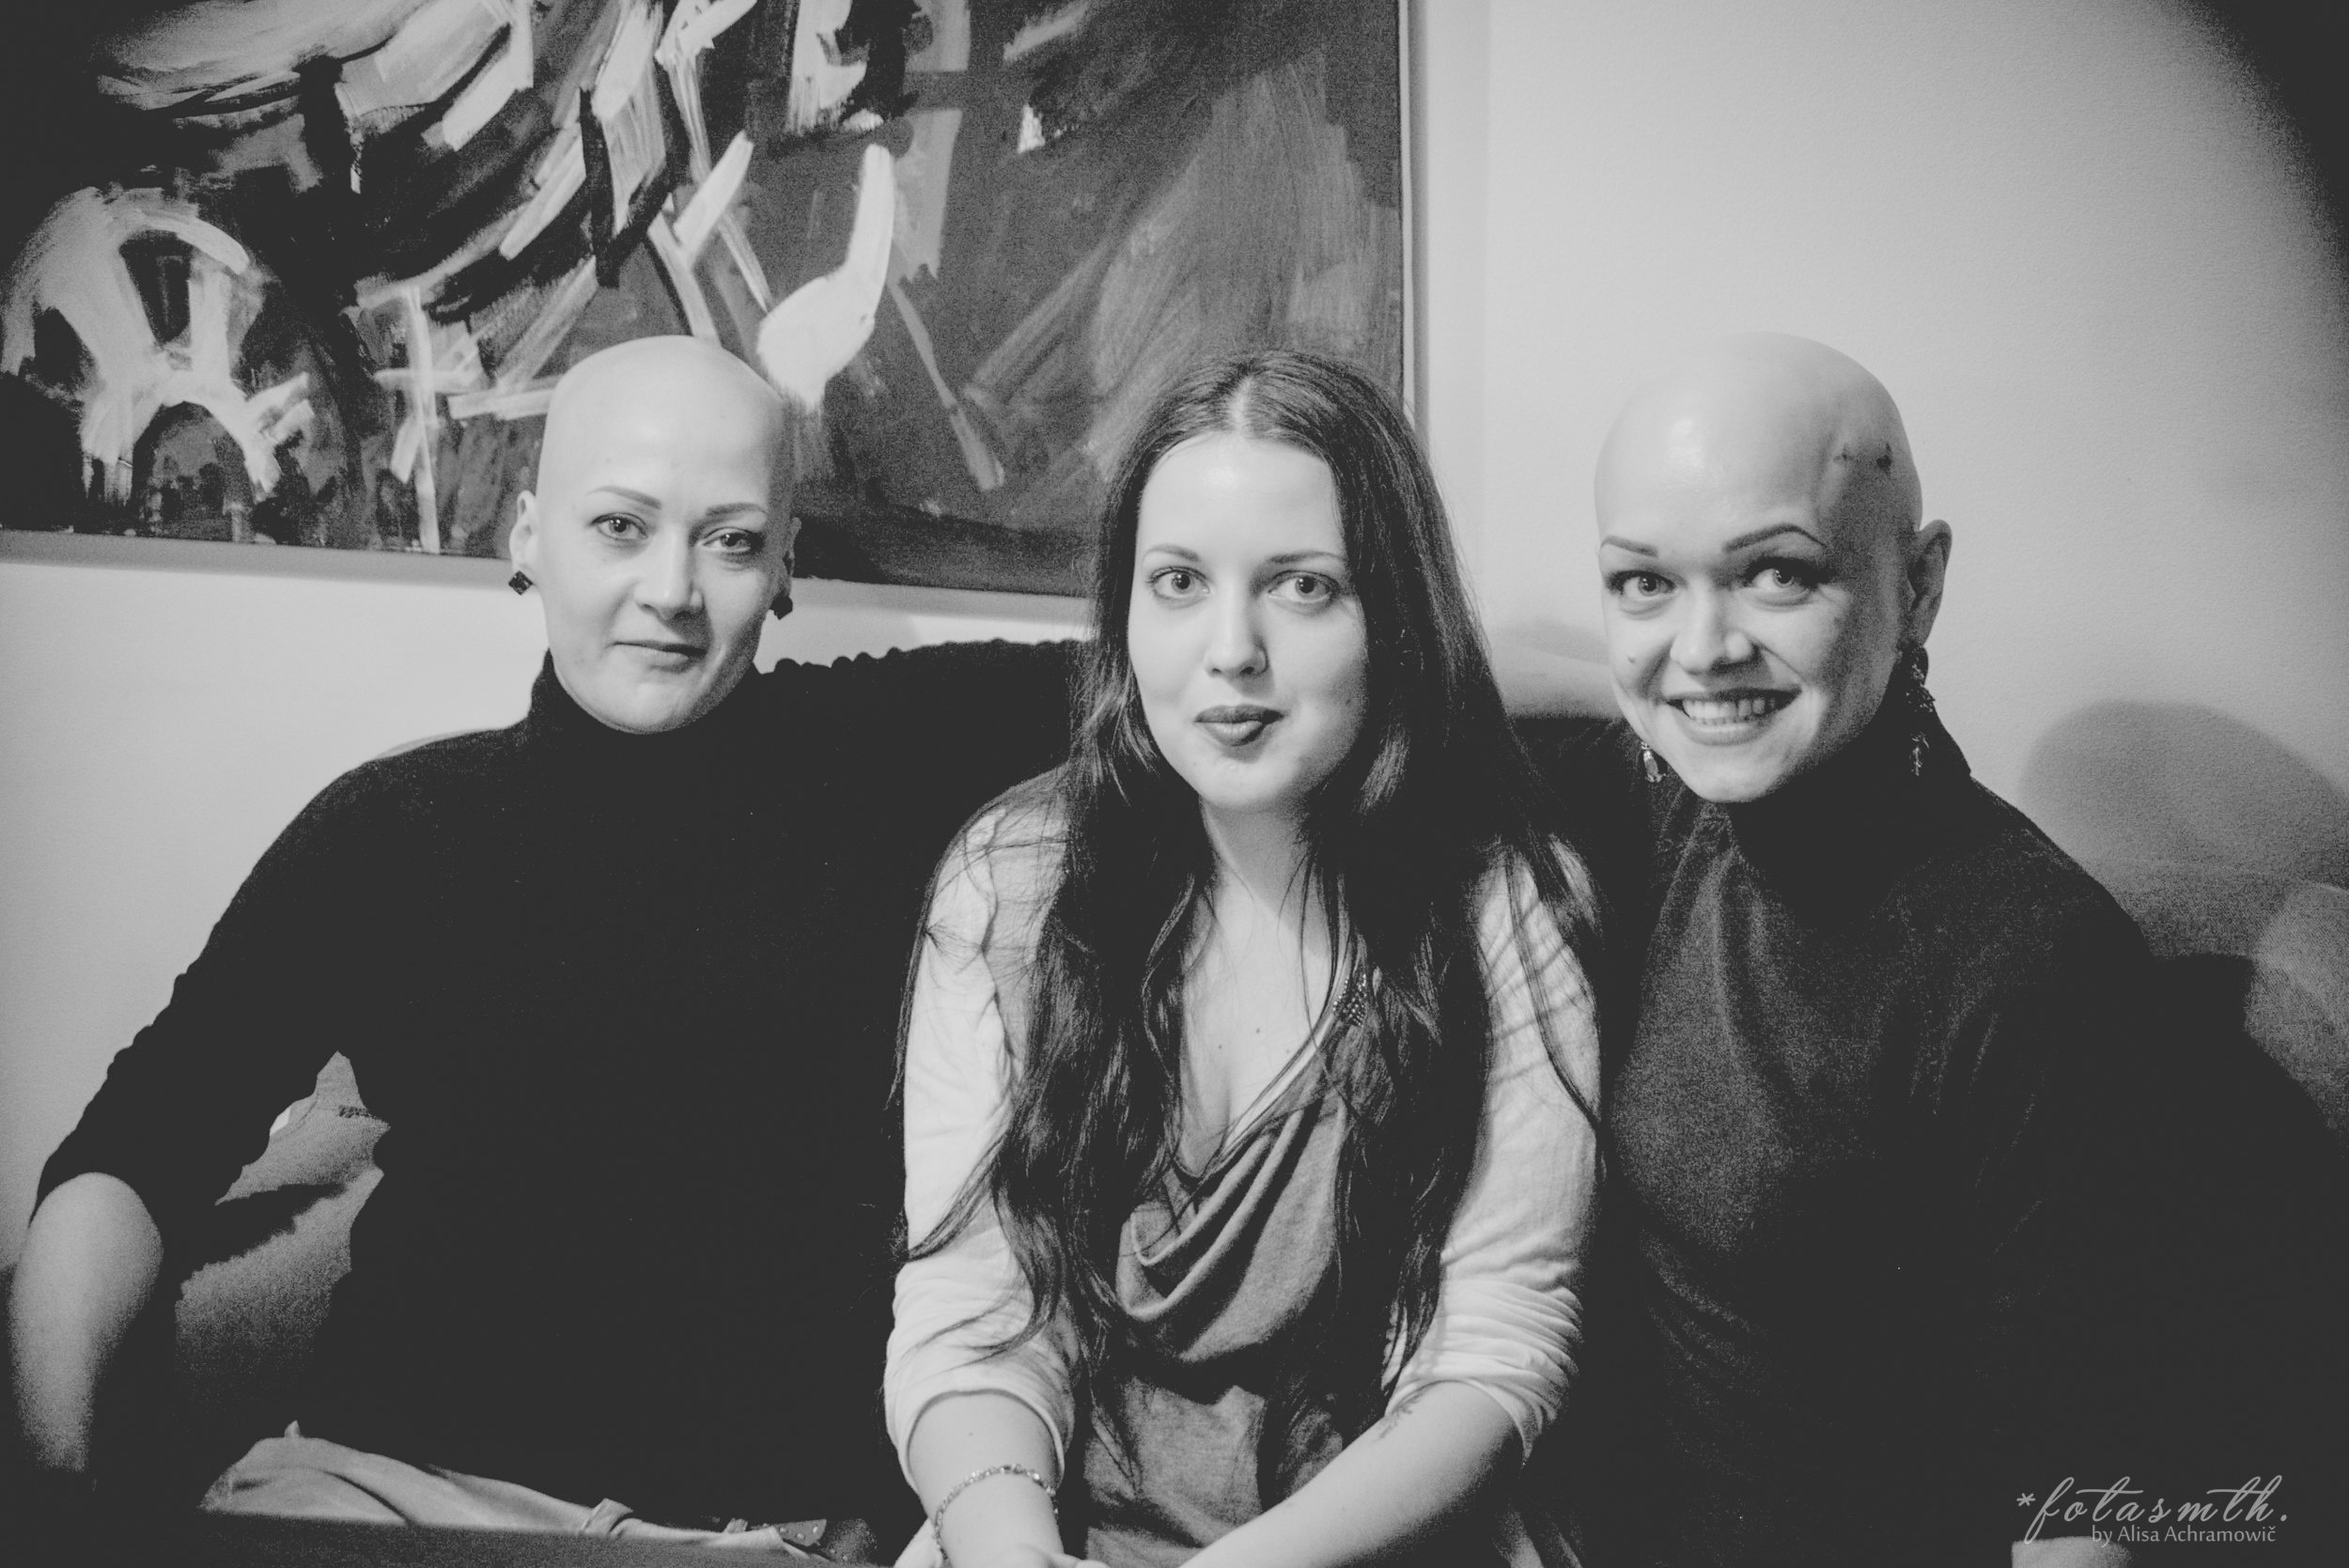 Изображение: Фото Alisa Achramowić / Черно-белая фотография трех женщин. На снимке – героини материала Ира и Катя вместе с авторкой текста. Они сидят на диване, на фоне светлой стены и картины с абстрактным сюжетом. Девушки улыбаются, глядя в камеру.